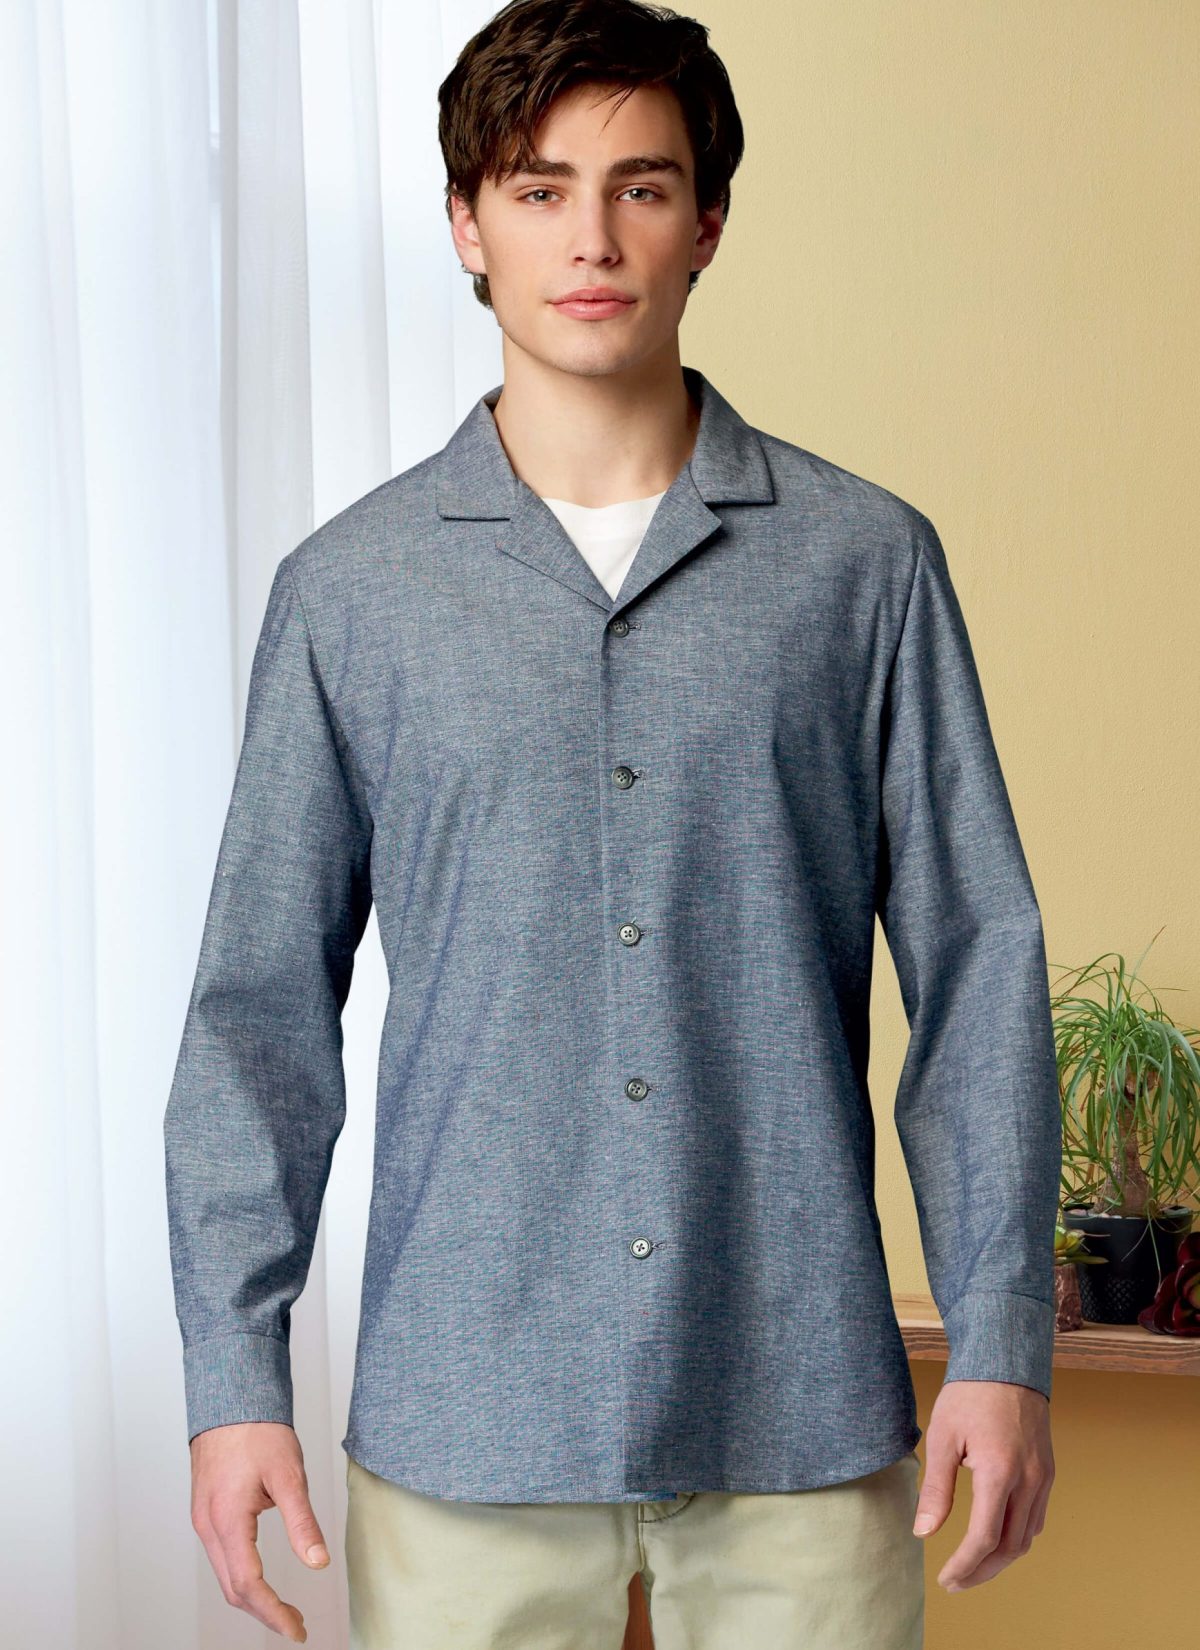 Butterick Sewing Pattern B6846 Unisex Button-Down Shirts Palmer/Pletsch